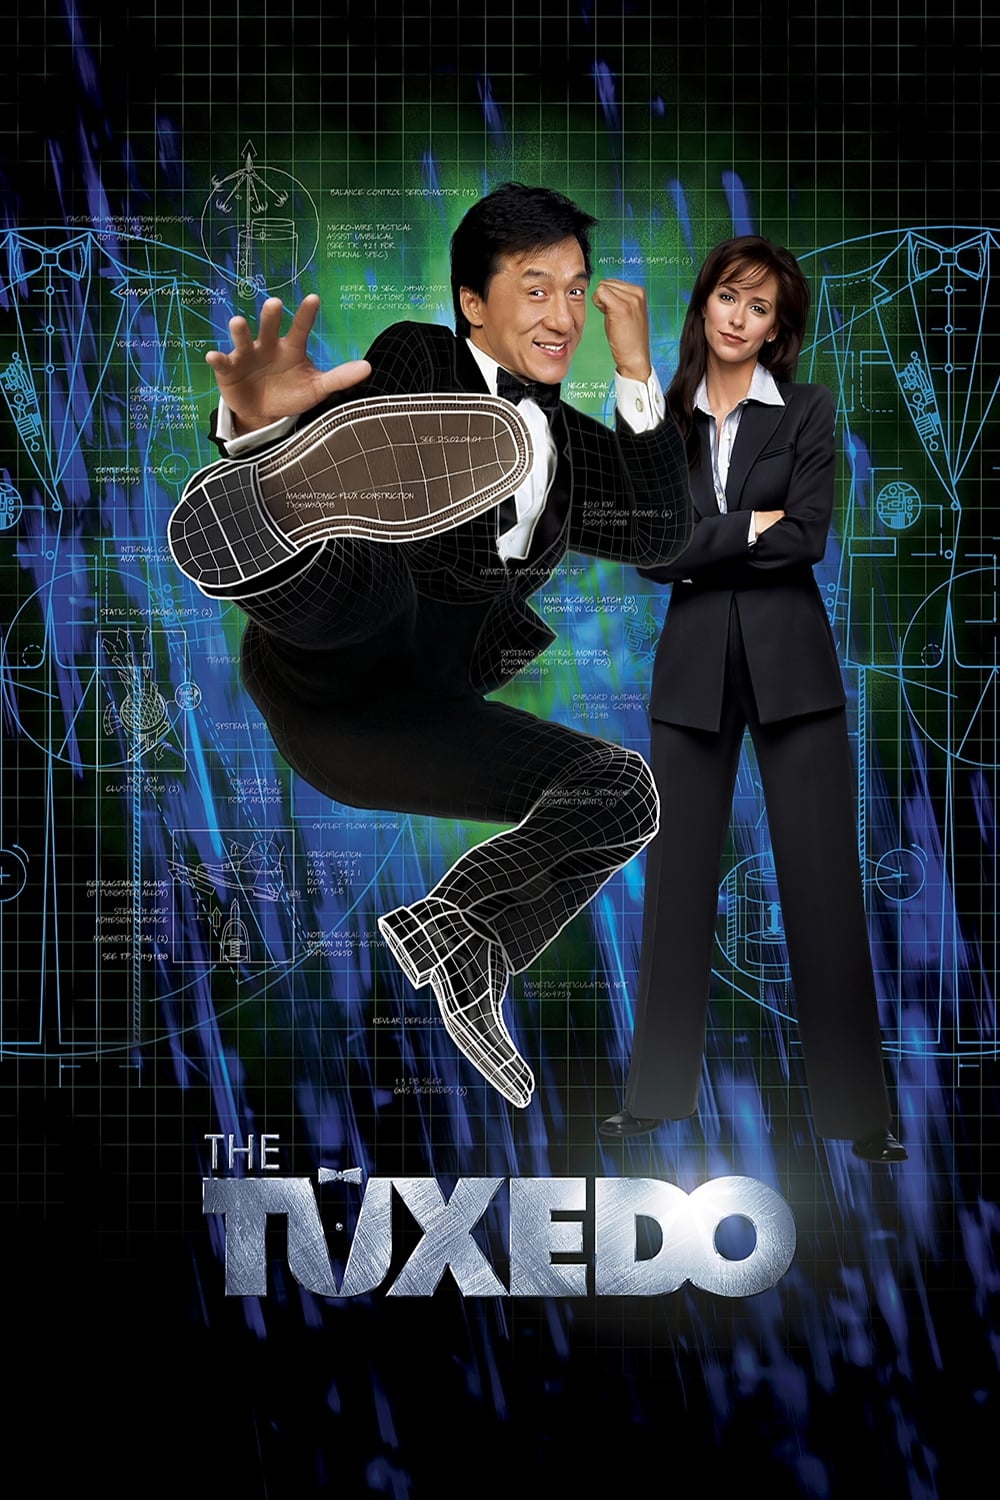 The Tuxedo - Gefahr im Anzug